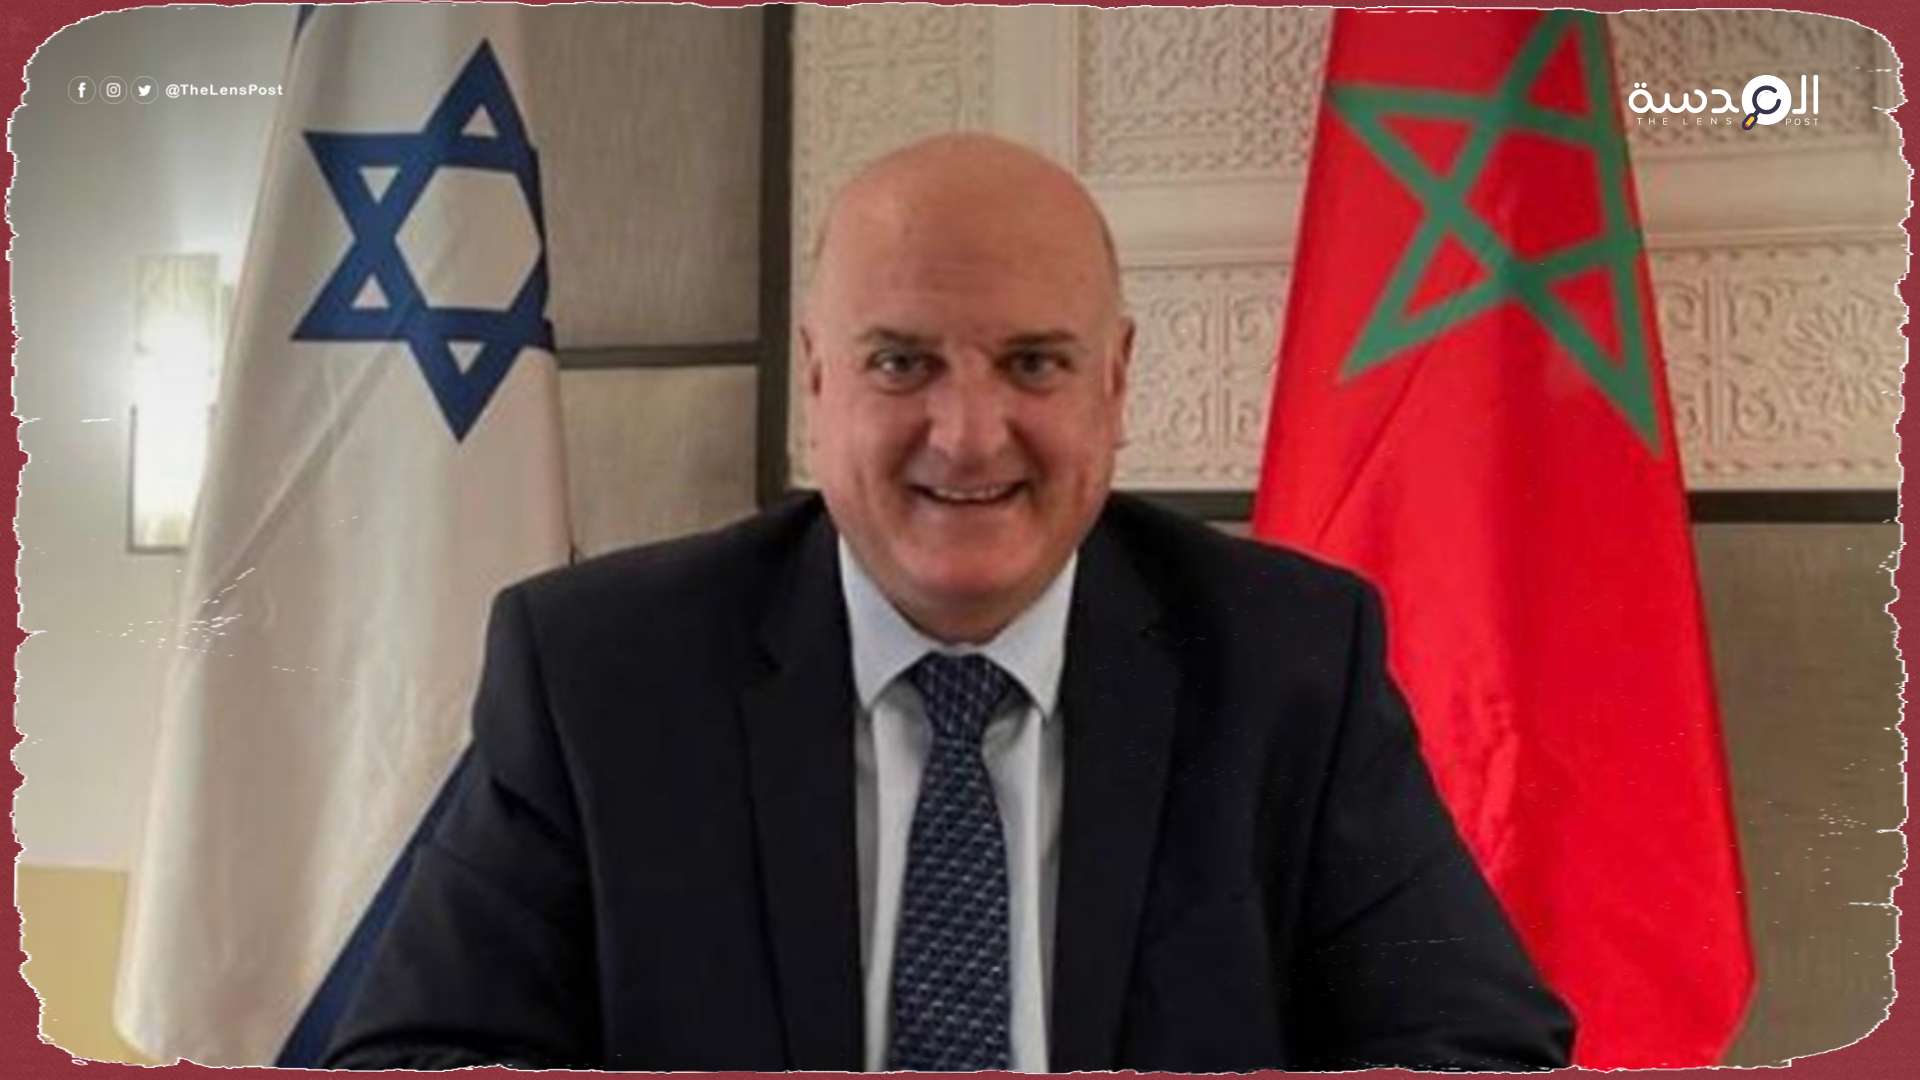 تجهيز تأشيرات إسرائيلية لاستقدام عمال من المغرب